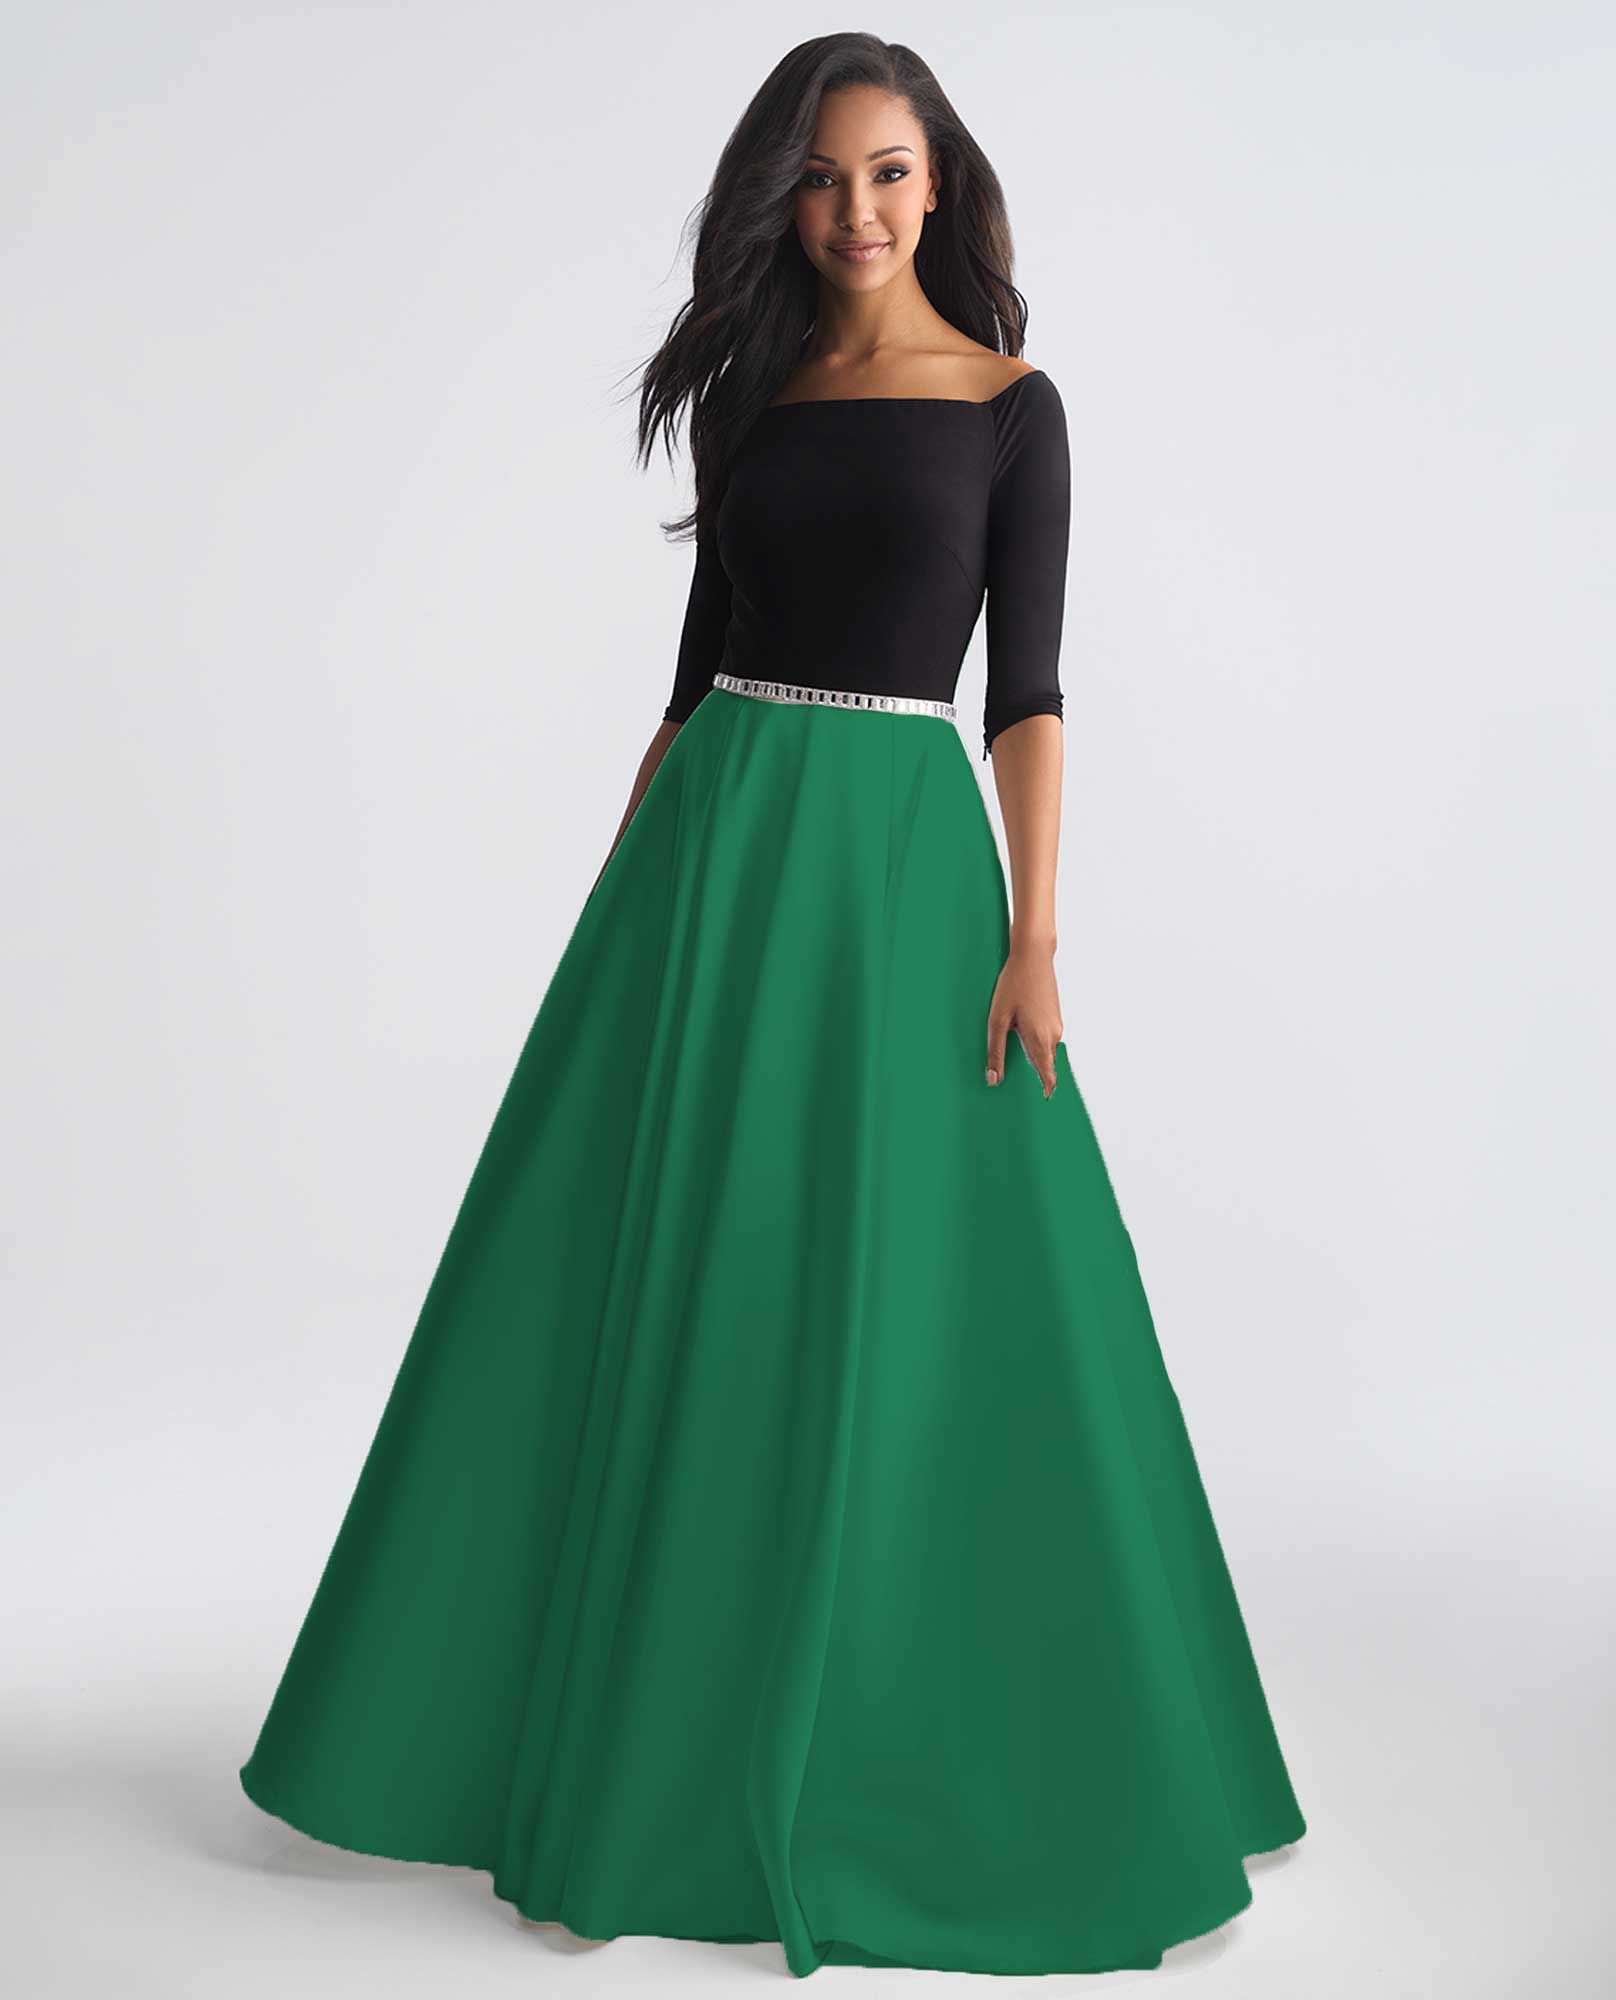 green ball gown skirt